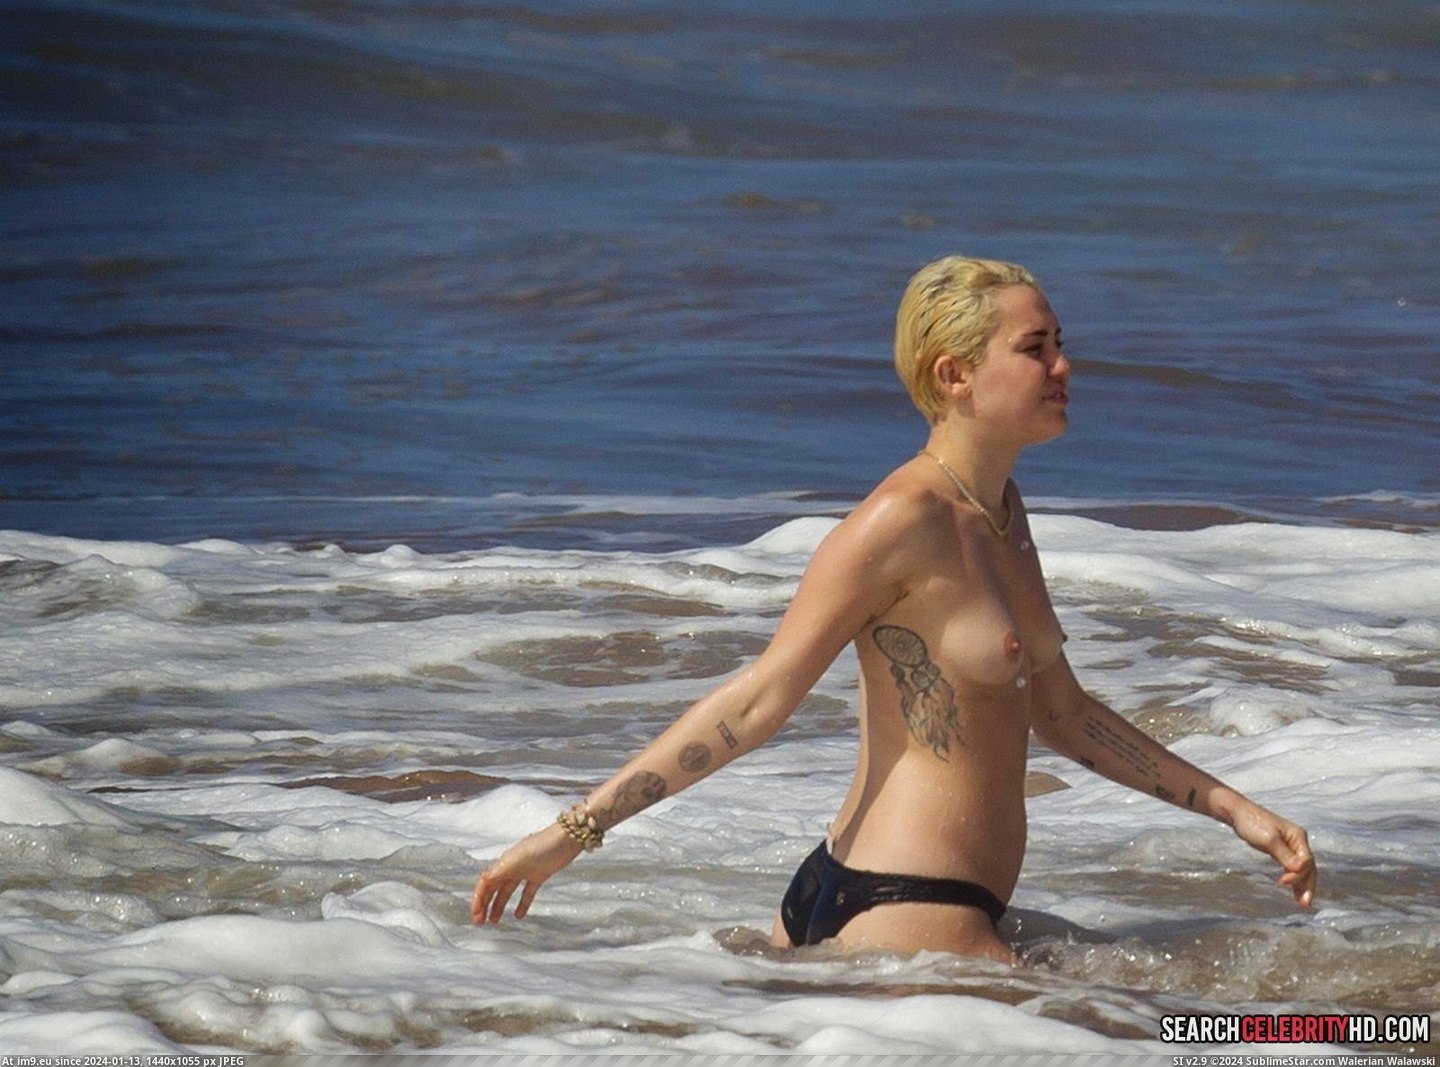 Miley Cyrus Topless Bikini Candid Photos In Hawaii (20) (in Miley Cyrus Topless Bikini Candid Photos In Hawaii)